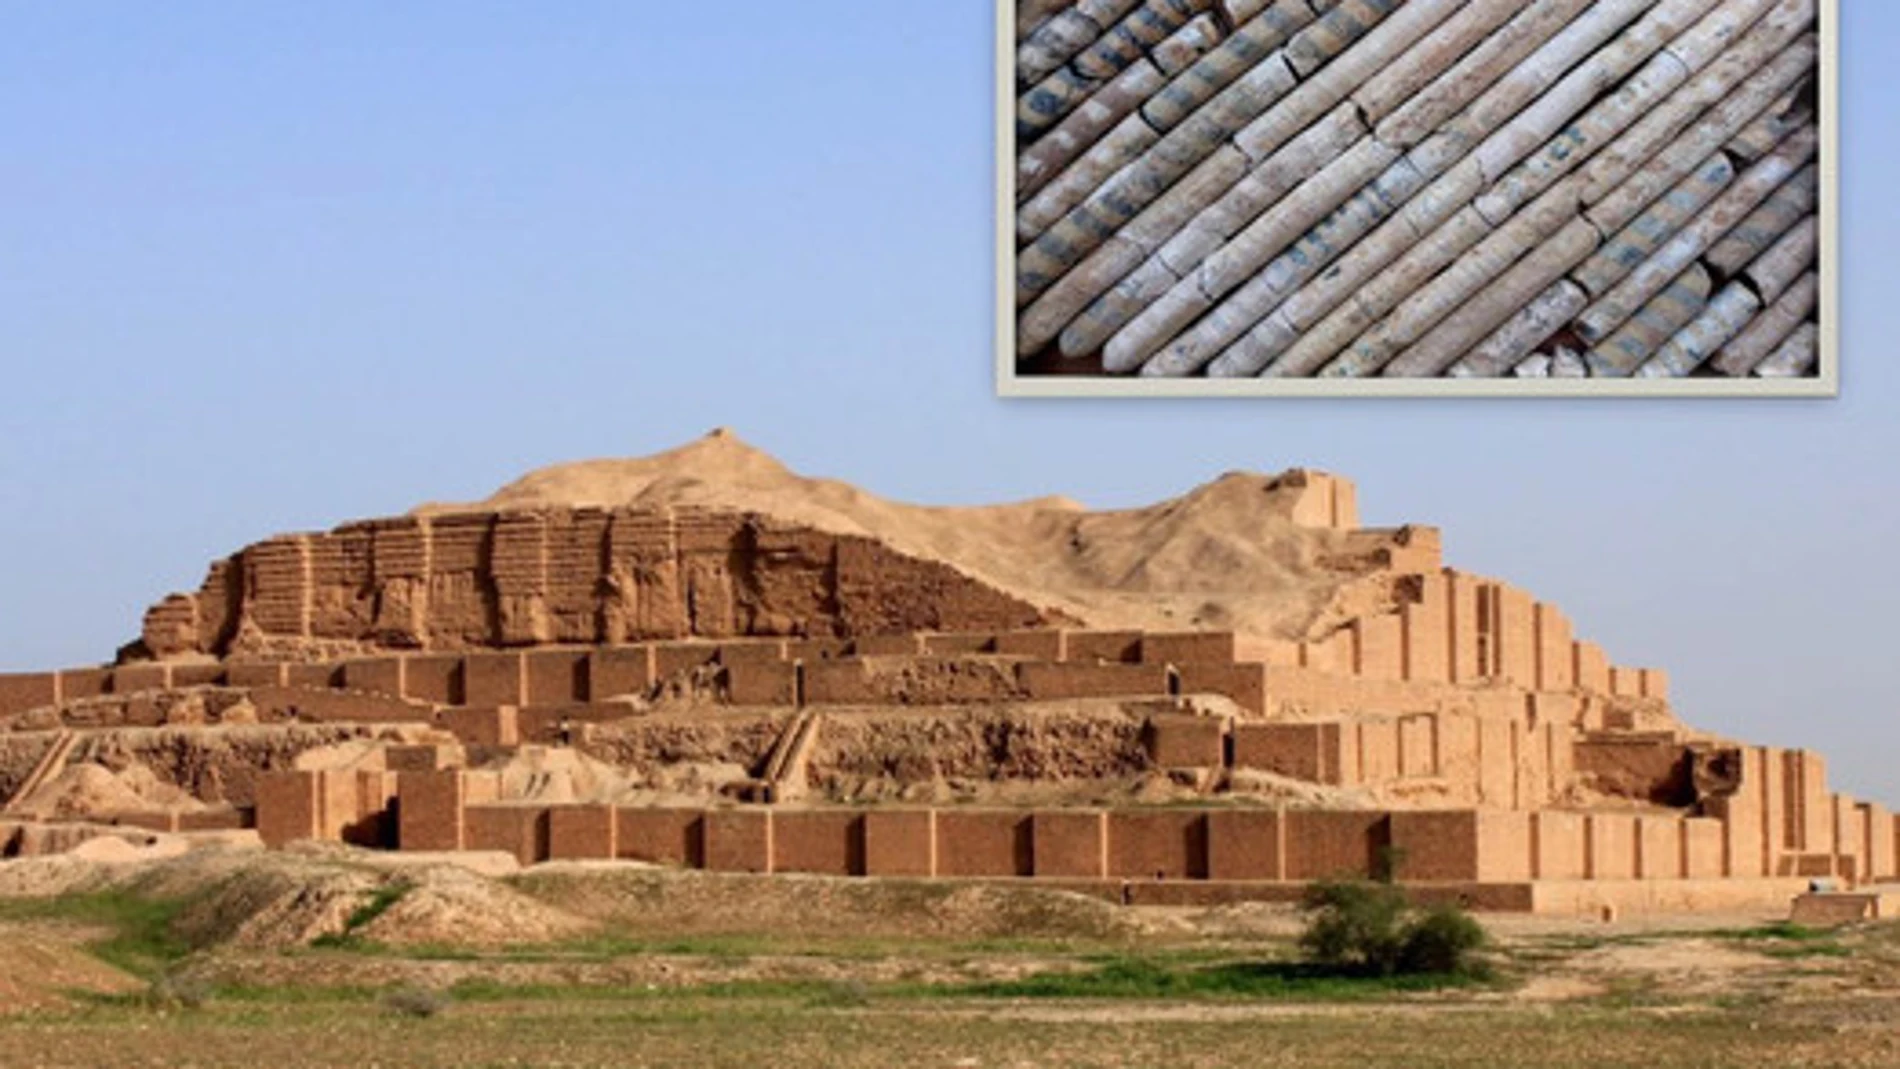 Piezas de vidrio (arriba) que fueron usadas en la decoración de puertas y paredes del templo de Chogha-Zanbil. / Mohammadamin Emami